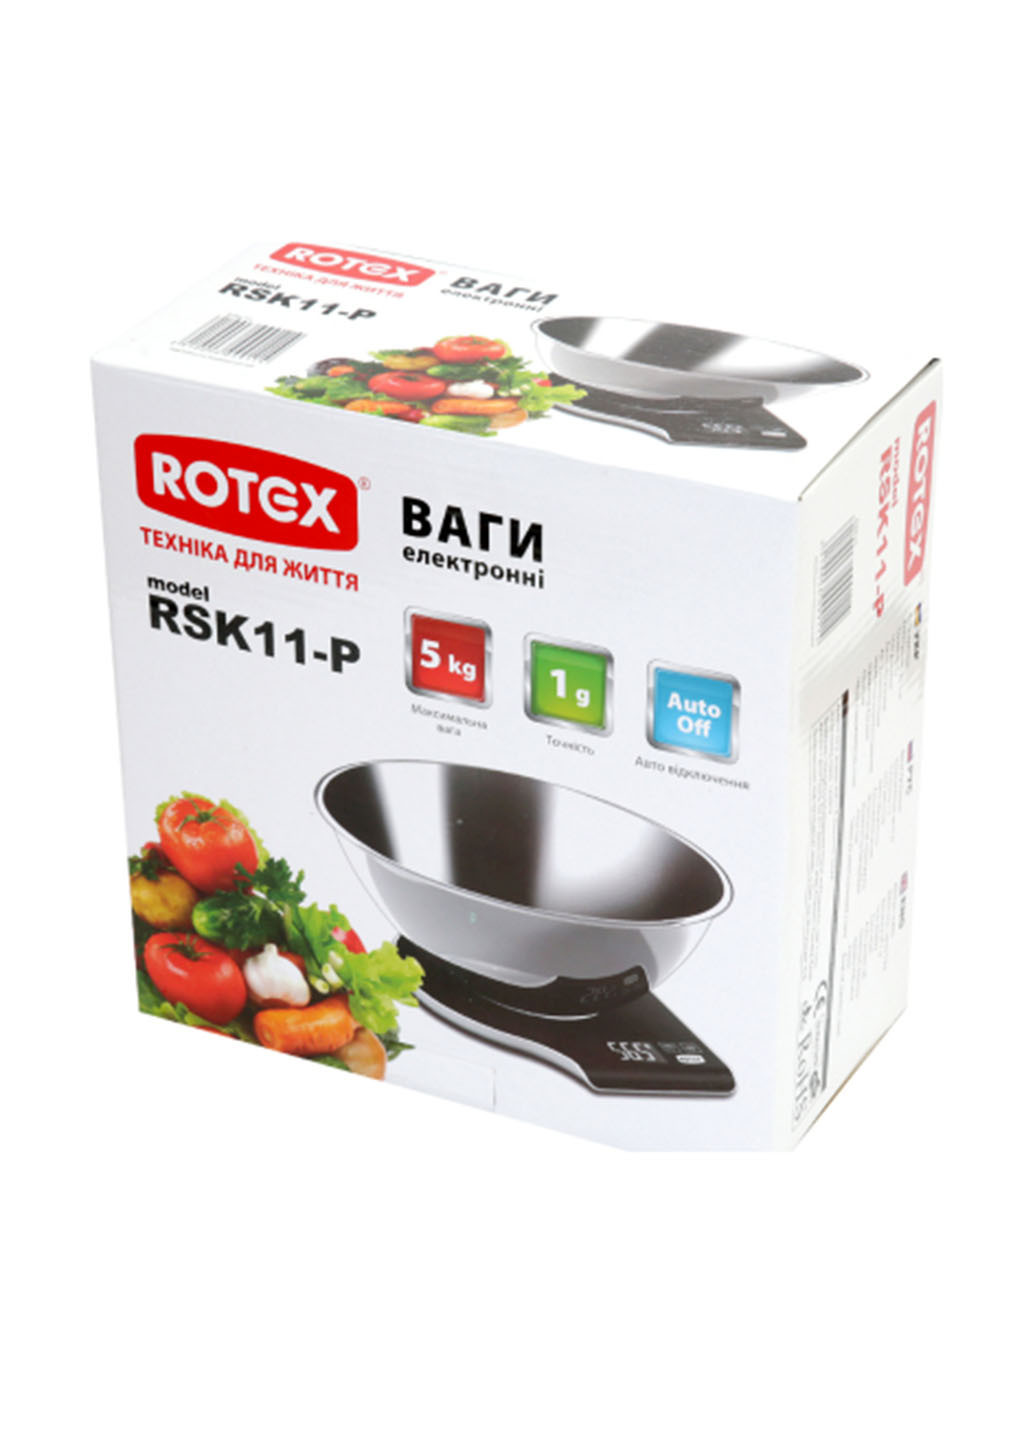 Весы кухонные Rotex rsk11-p (138094029)